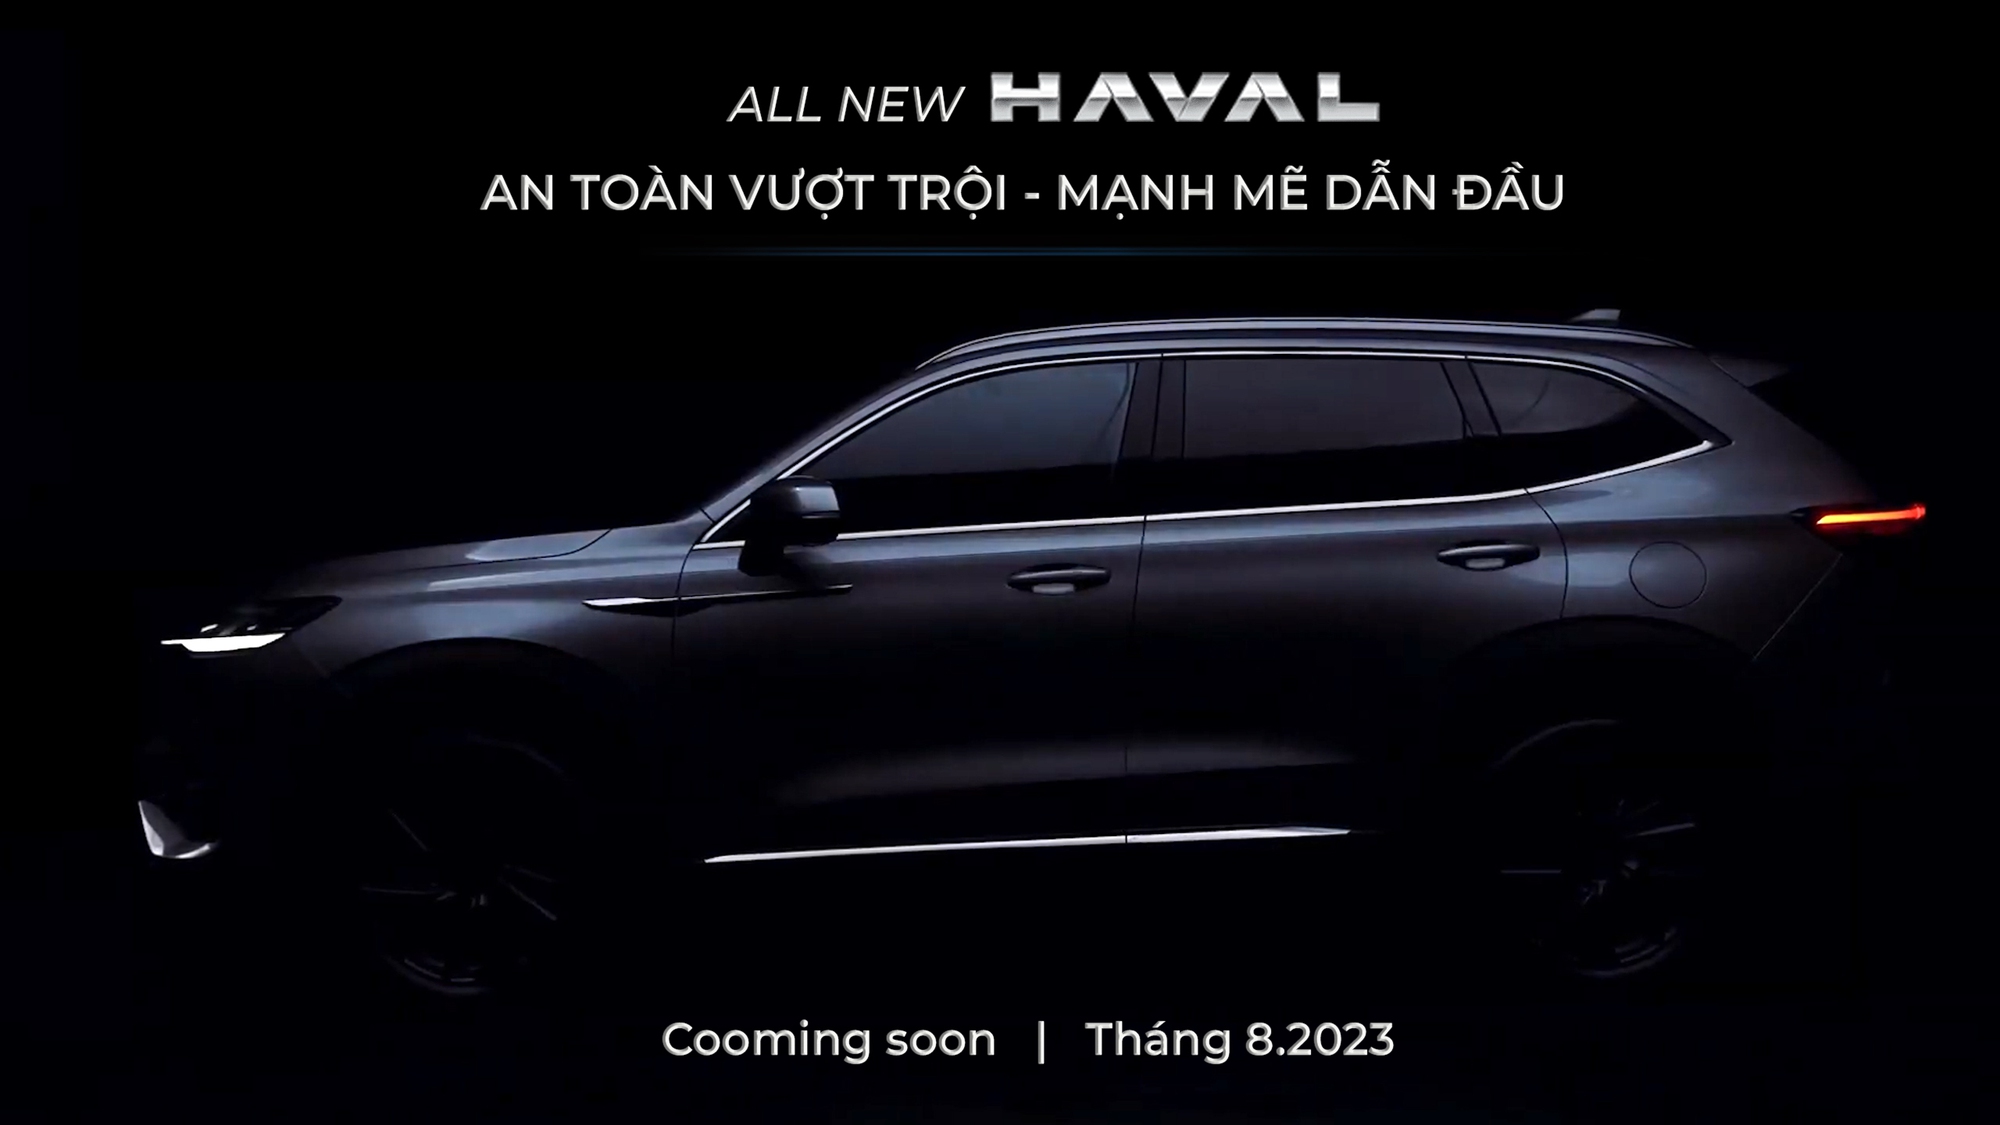 SUV phân khúc C hoàn toàn mới sắp ra mắt tại Việt Nam: Động cơ hybrid, nhiều trang bị hiện đại - Ảnh 1.